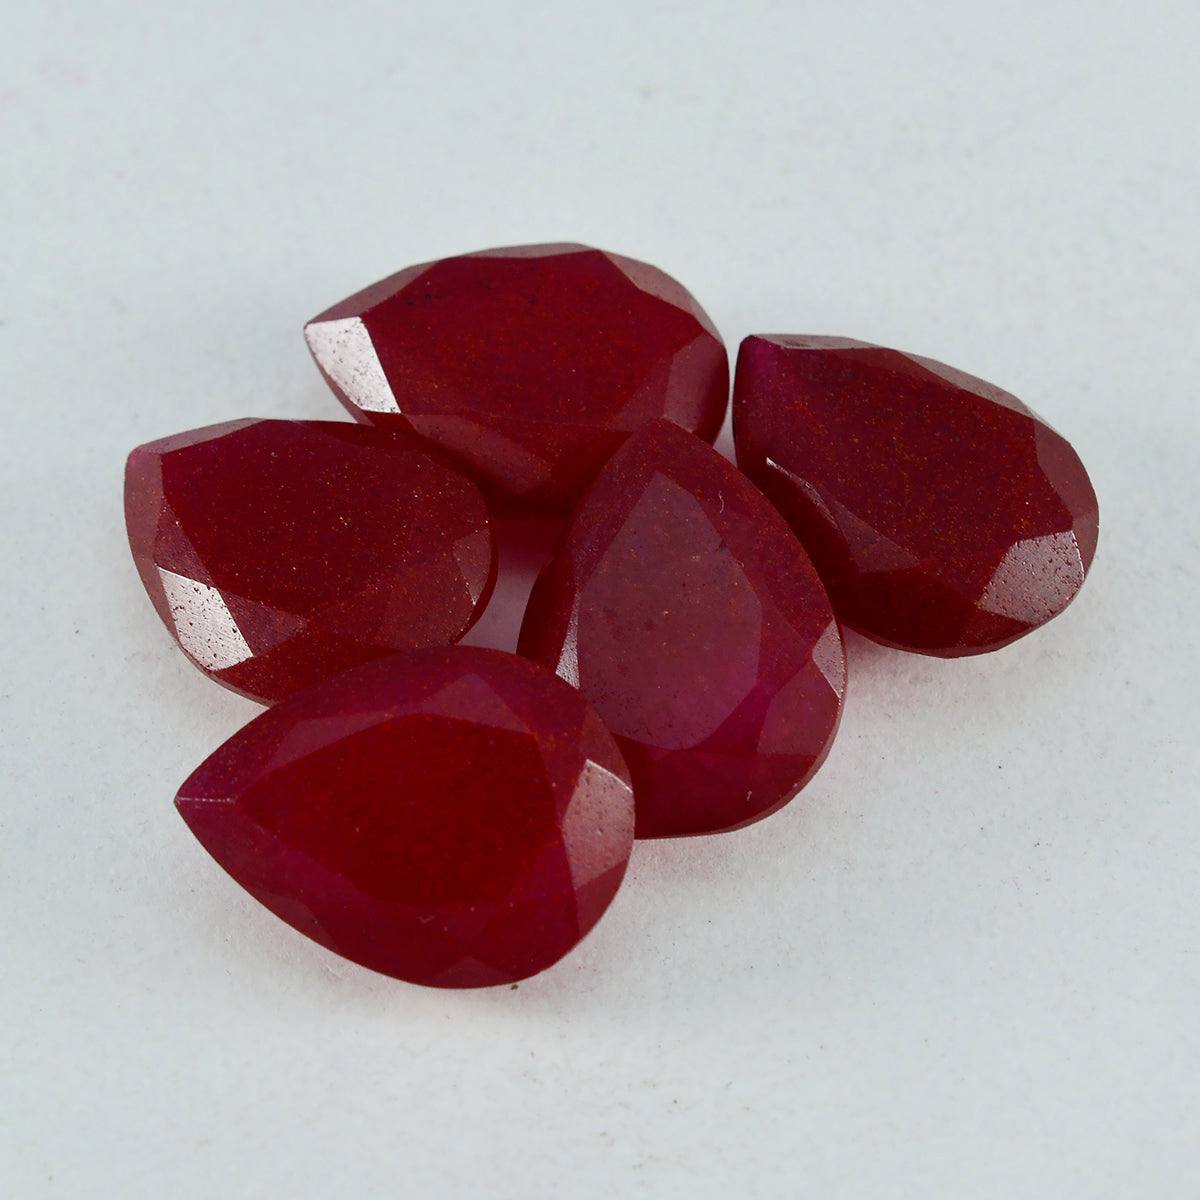 Riyogems 1 pieza de jaspe rojo auténtico facetado de 3x3 mm, forma redonda, piedra preciosa suelta de maravillosa calidad